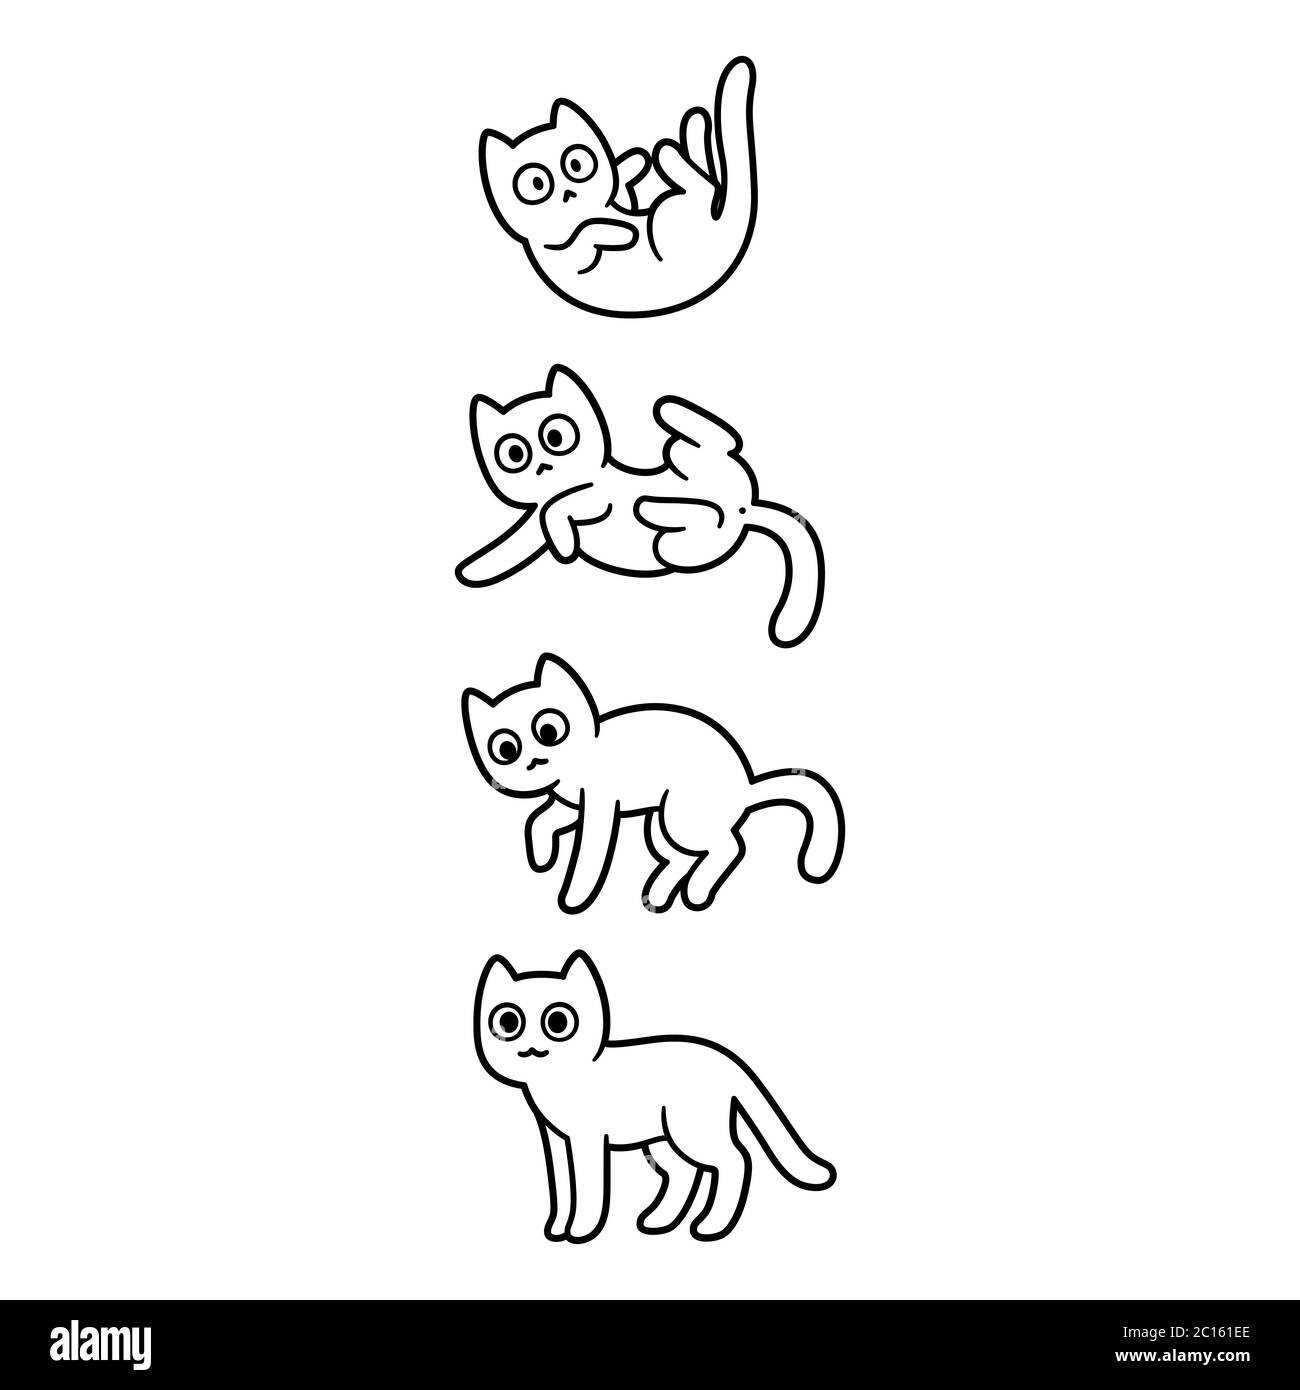 Carino gatto cartoon che cade e atterrando su tutte e quattro le zampe. Adorabile disegno di gattino bianco e nero. Illustrazione grafica a clip vettoriale isolata. Illustrazione Vettoriale